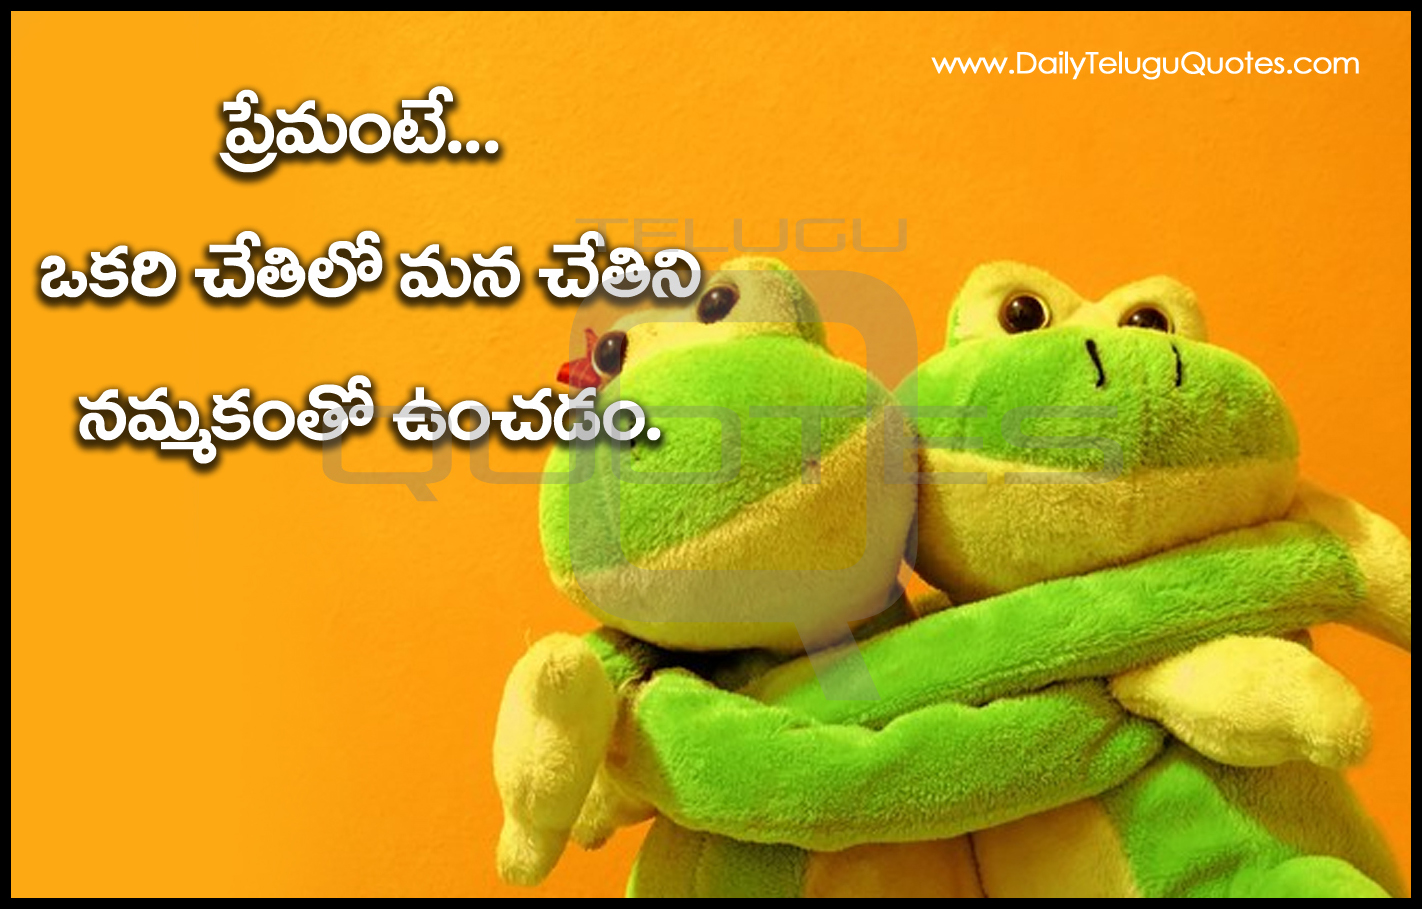 Beautiful Telugu Love Romantic Quotes with Telugu